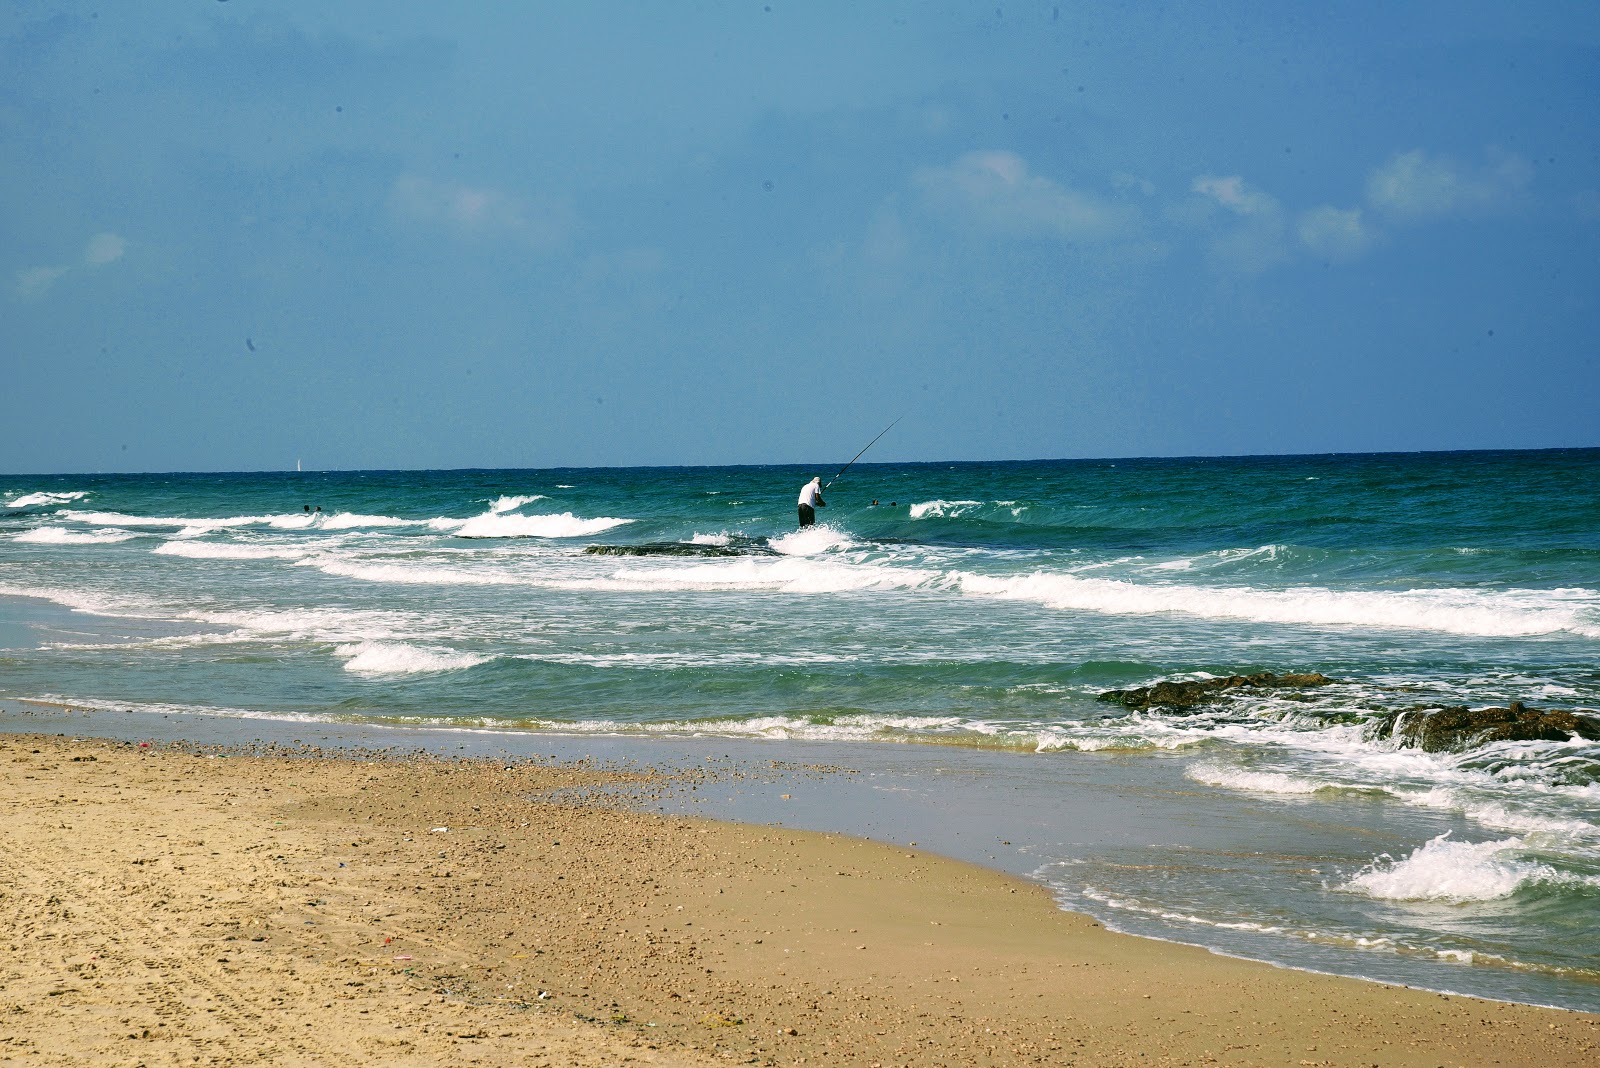 Ga'ash beach'in fotoğrafı parlak kum yüzey ile